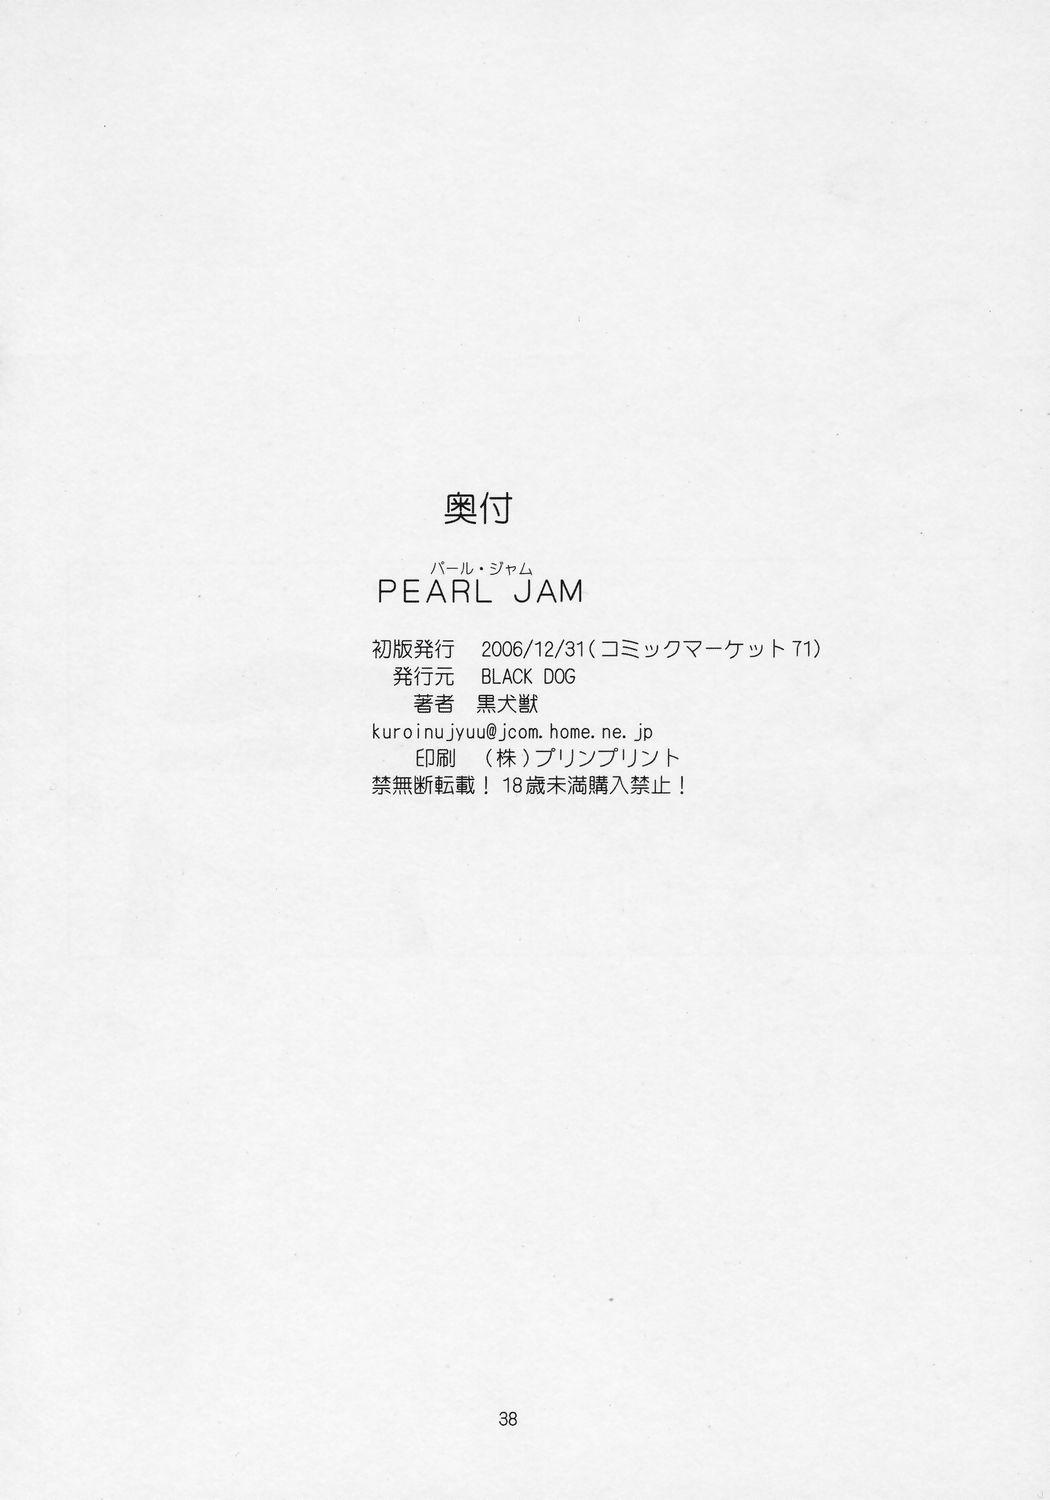 Pearl Jam 35